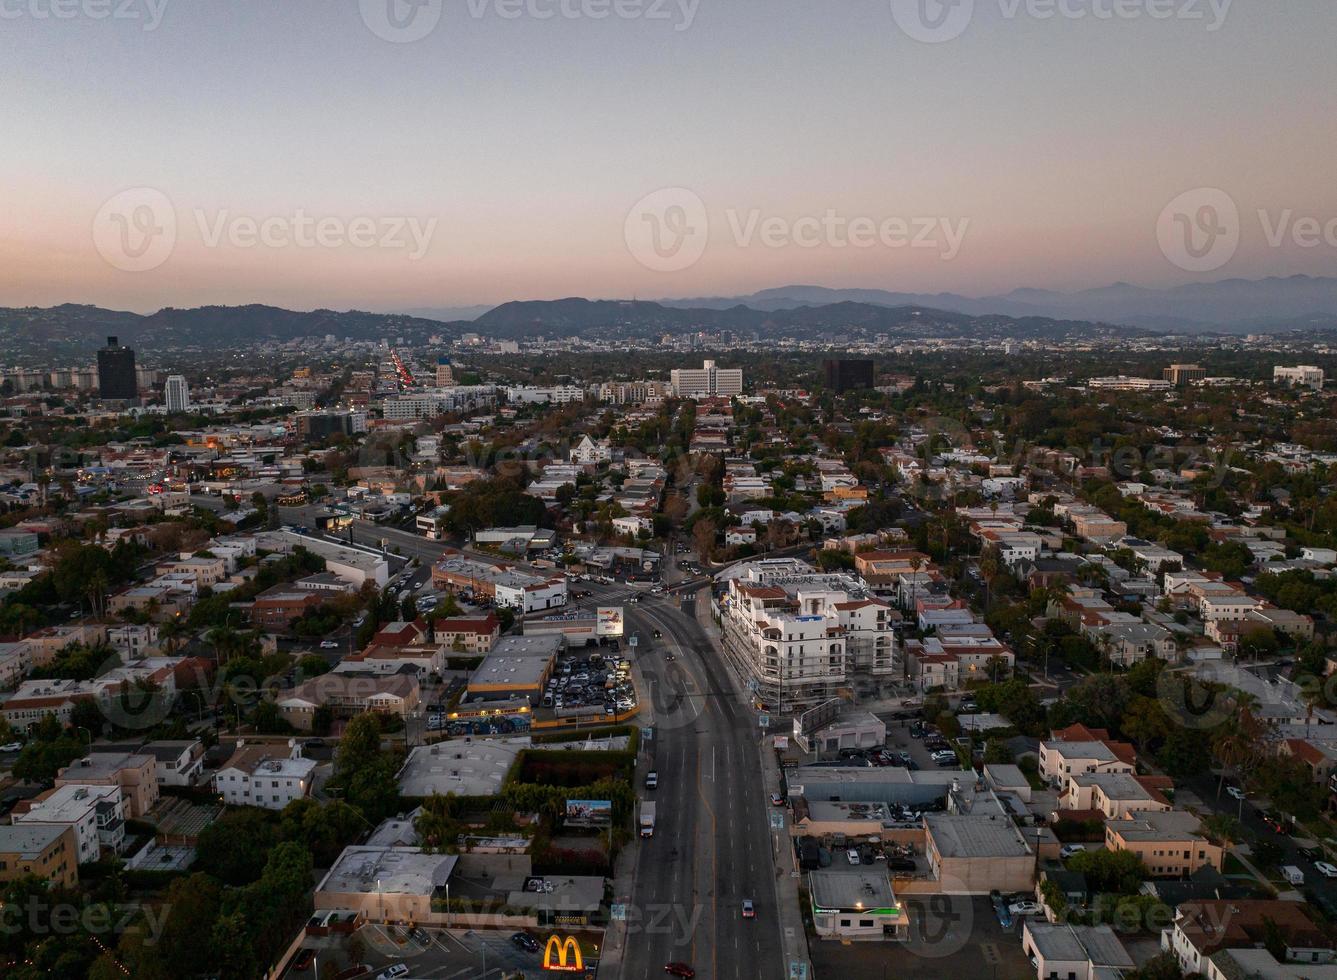 Blick auf den heißen Sonnenuntergang von Los Angeles mit Palmen und der Innenstadt im Hintergrund. foto